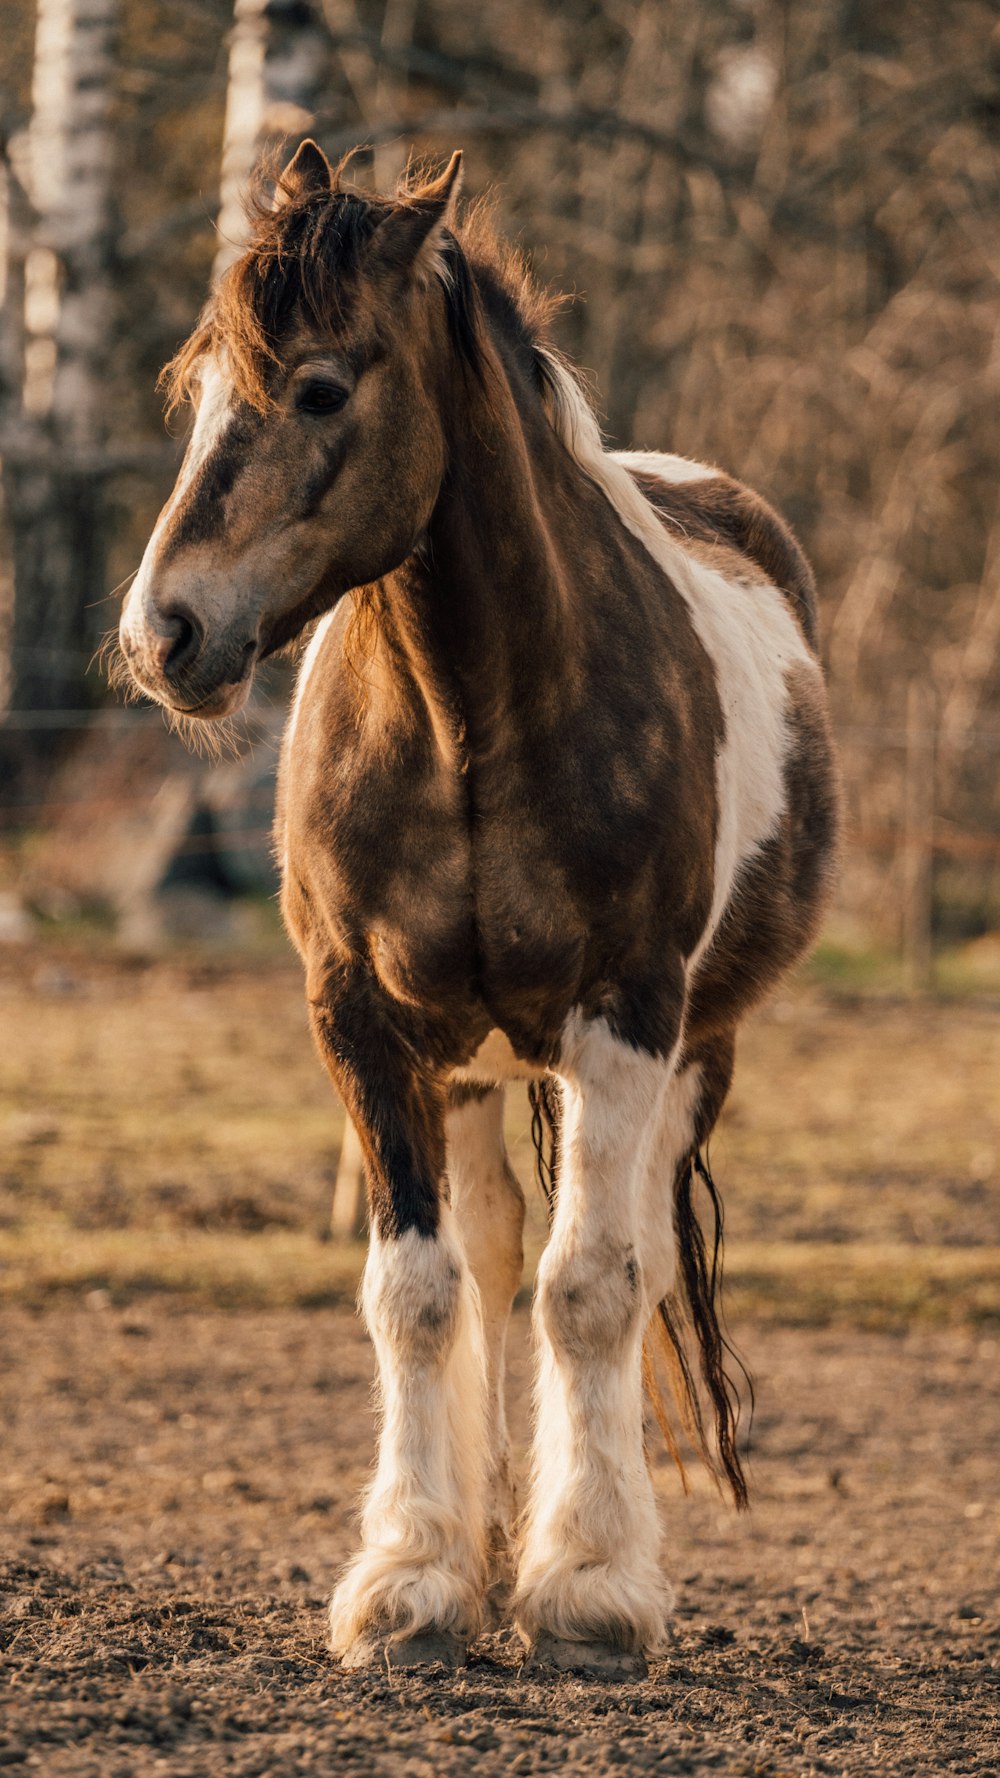 흙밭 위에 서 있는 갈색과 흰색 말